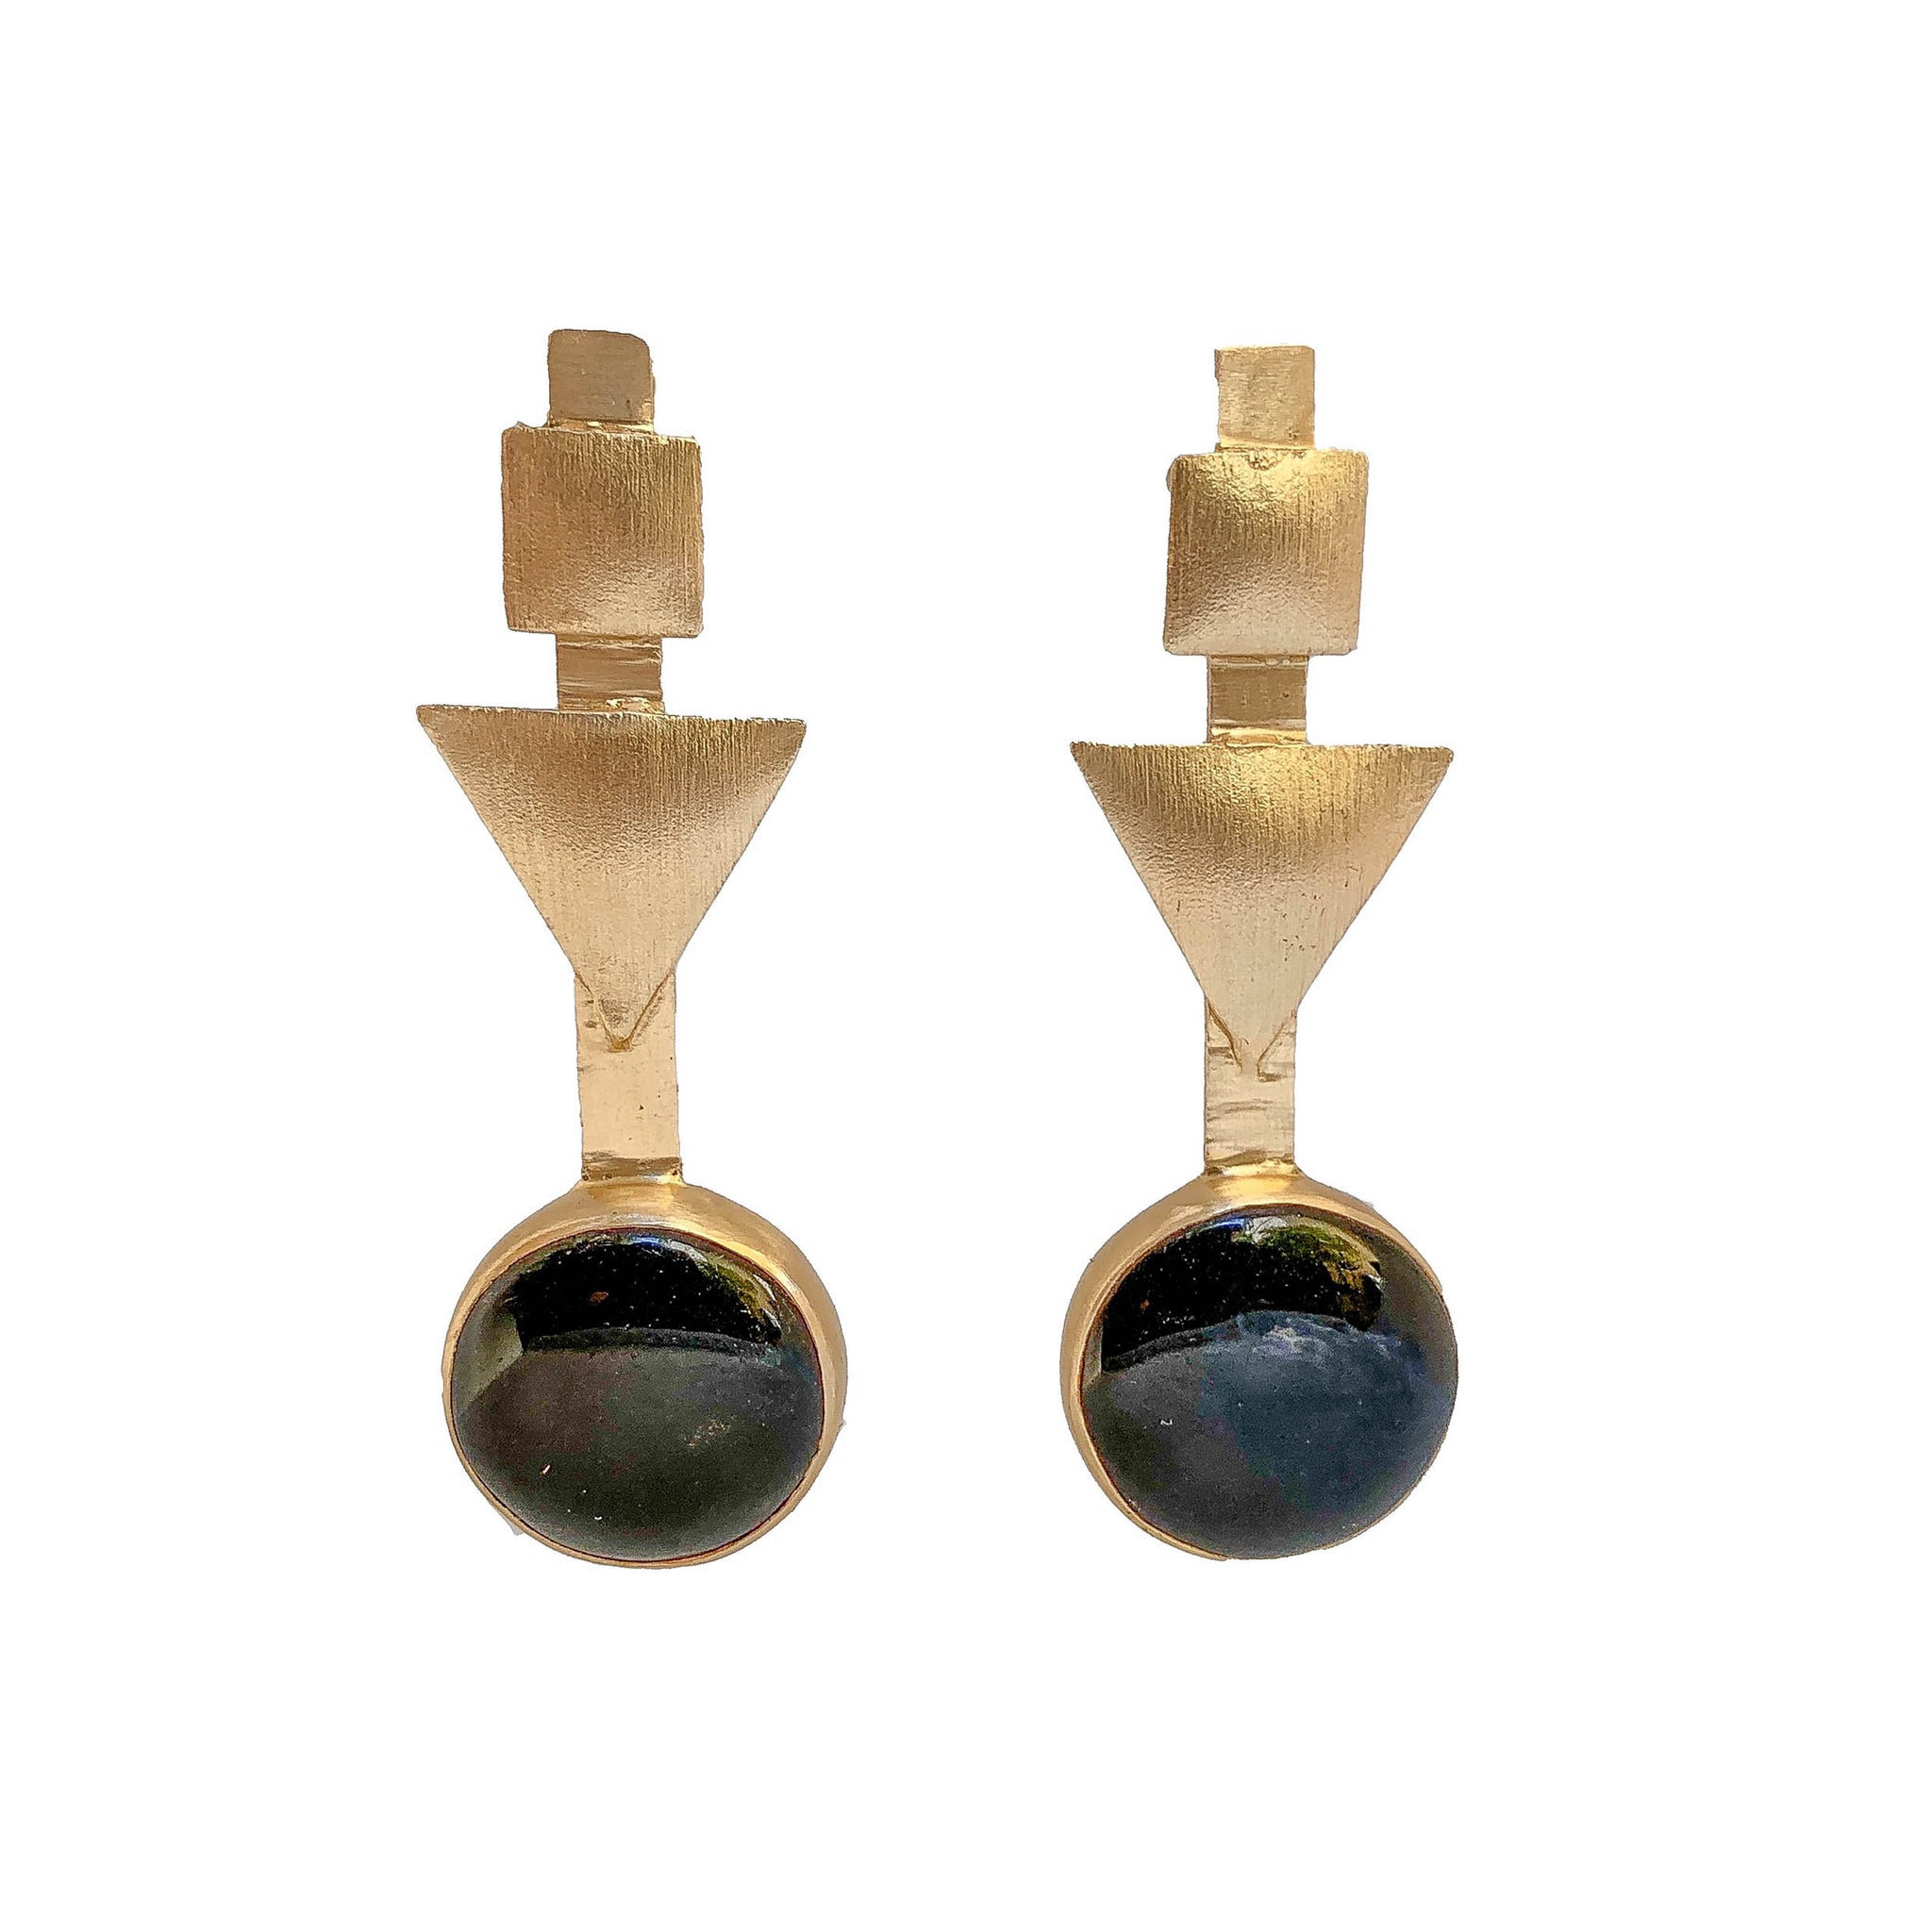 handmade gemstone earrings | natural stones earrings | gold plated earrings by Tanya Litkovska